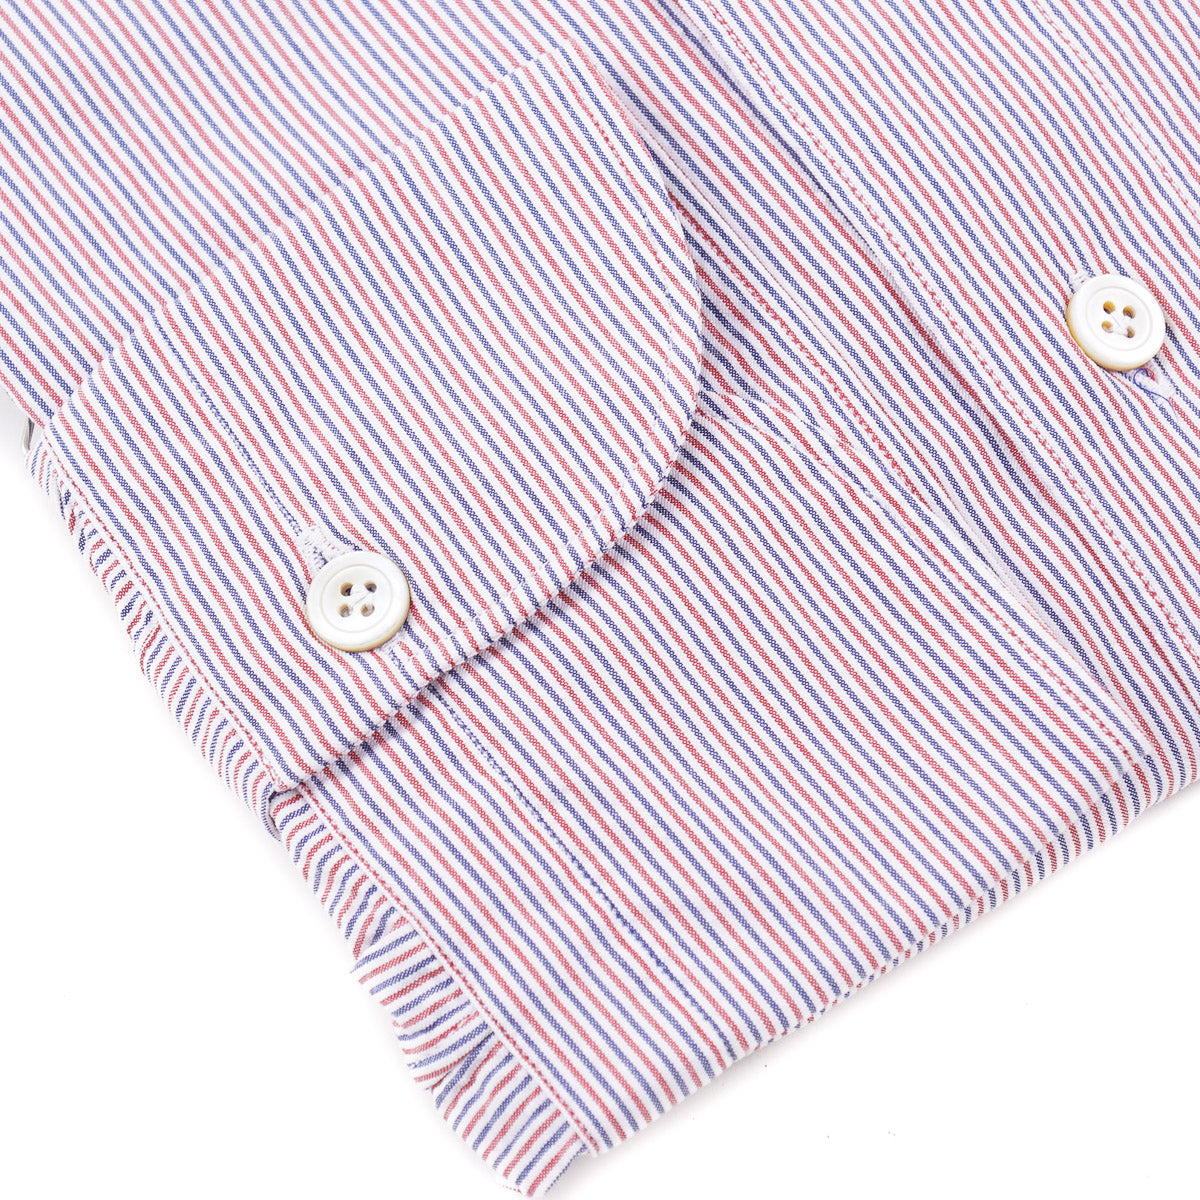 Finamore Woven Stripe Cotton Dress Shirt - Top Shelf Apparel